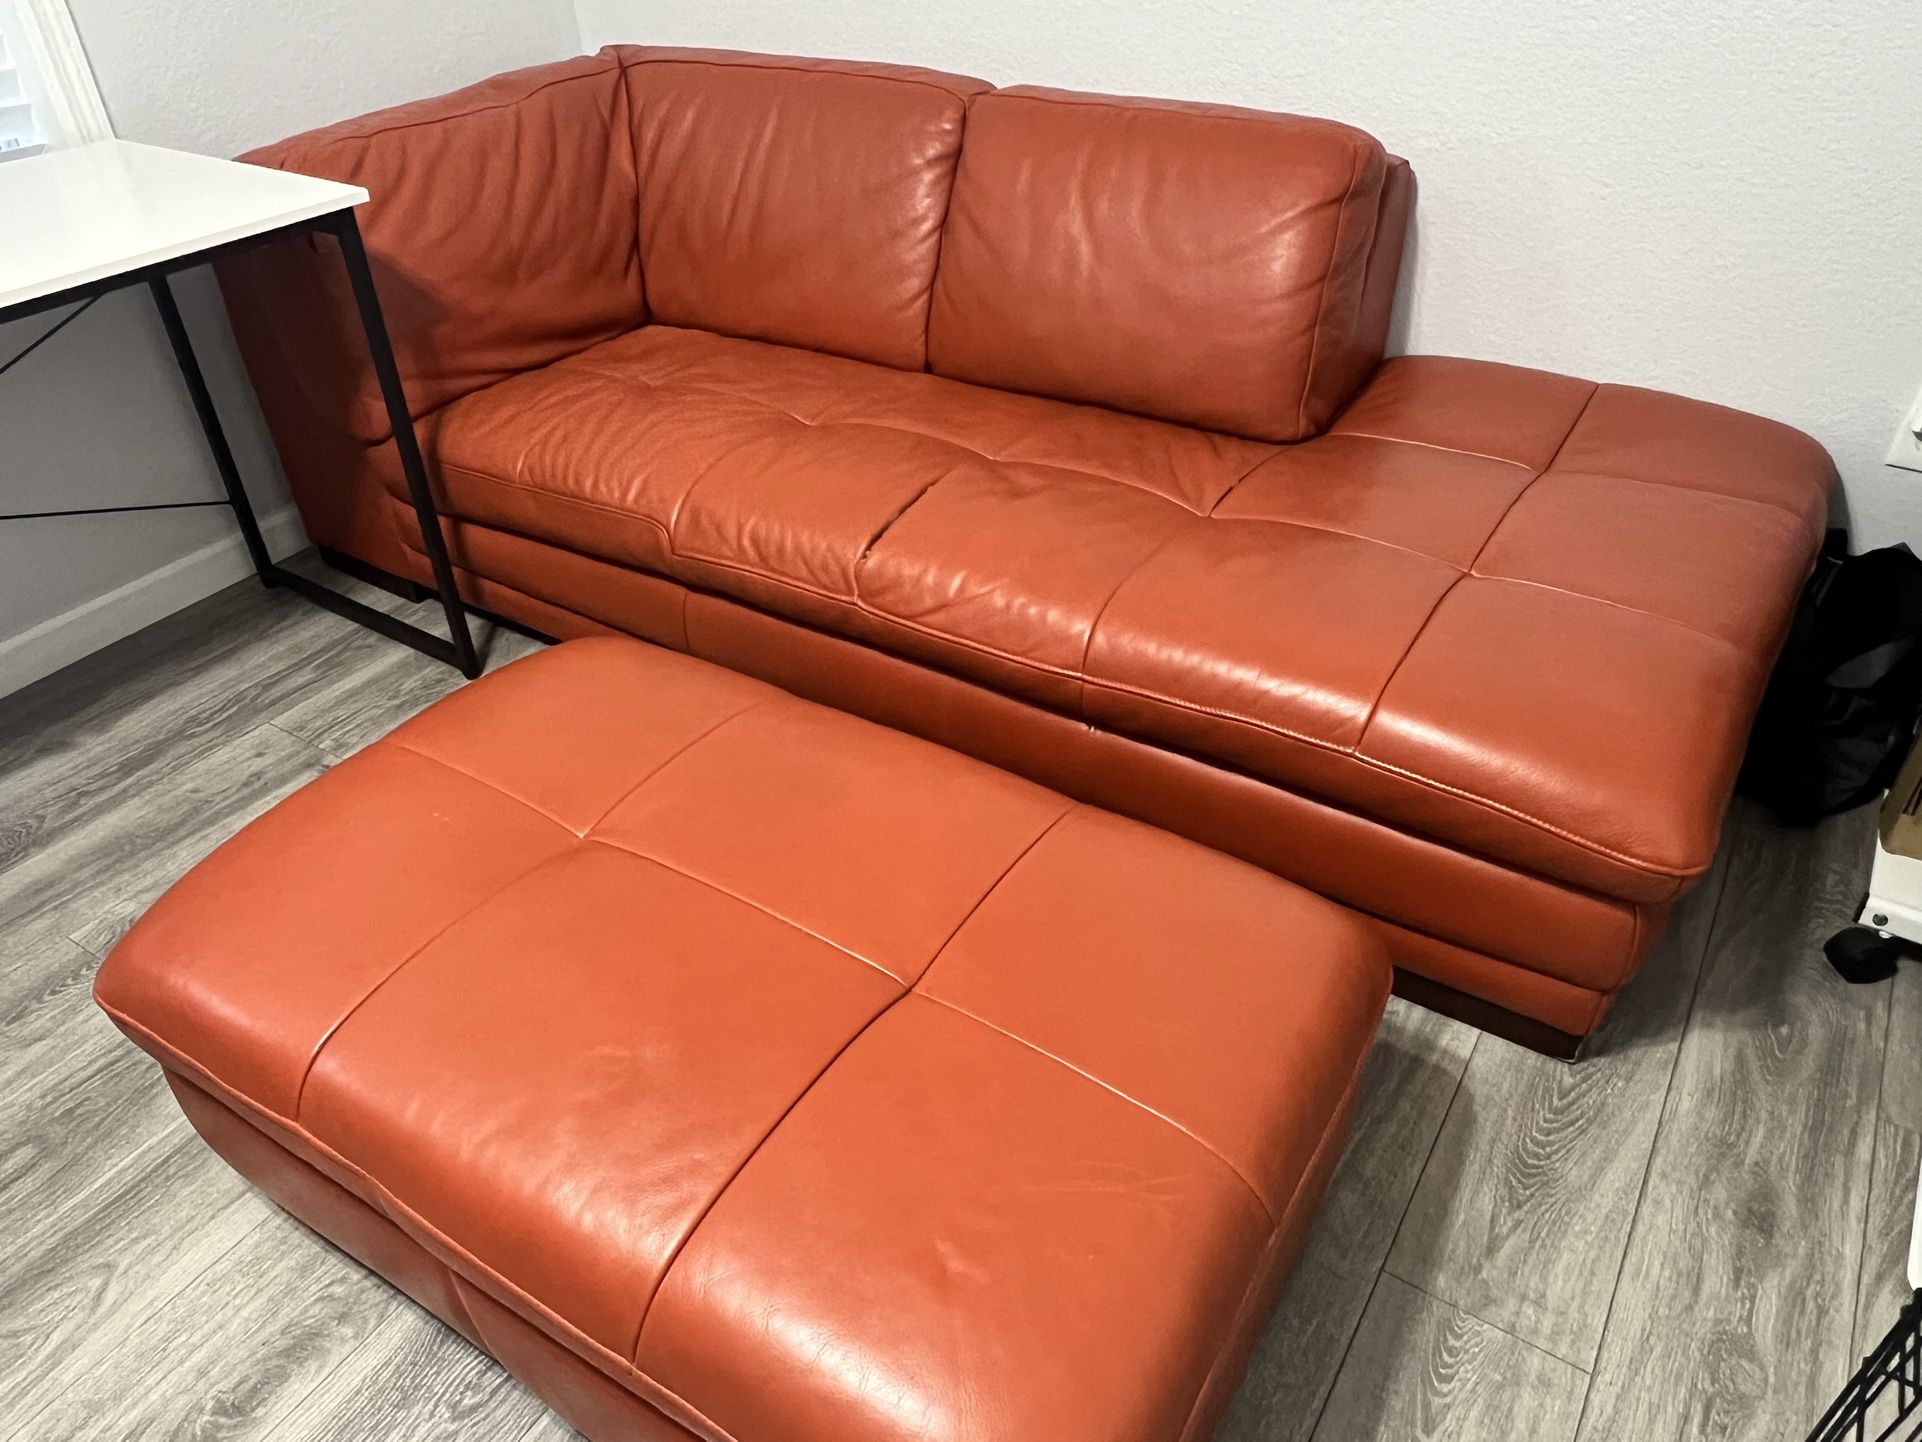 Orange Sofa/Chaise Couch w/ Ottoman